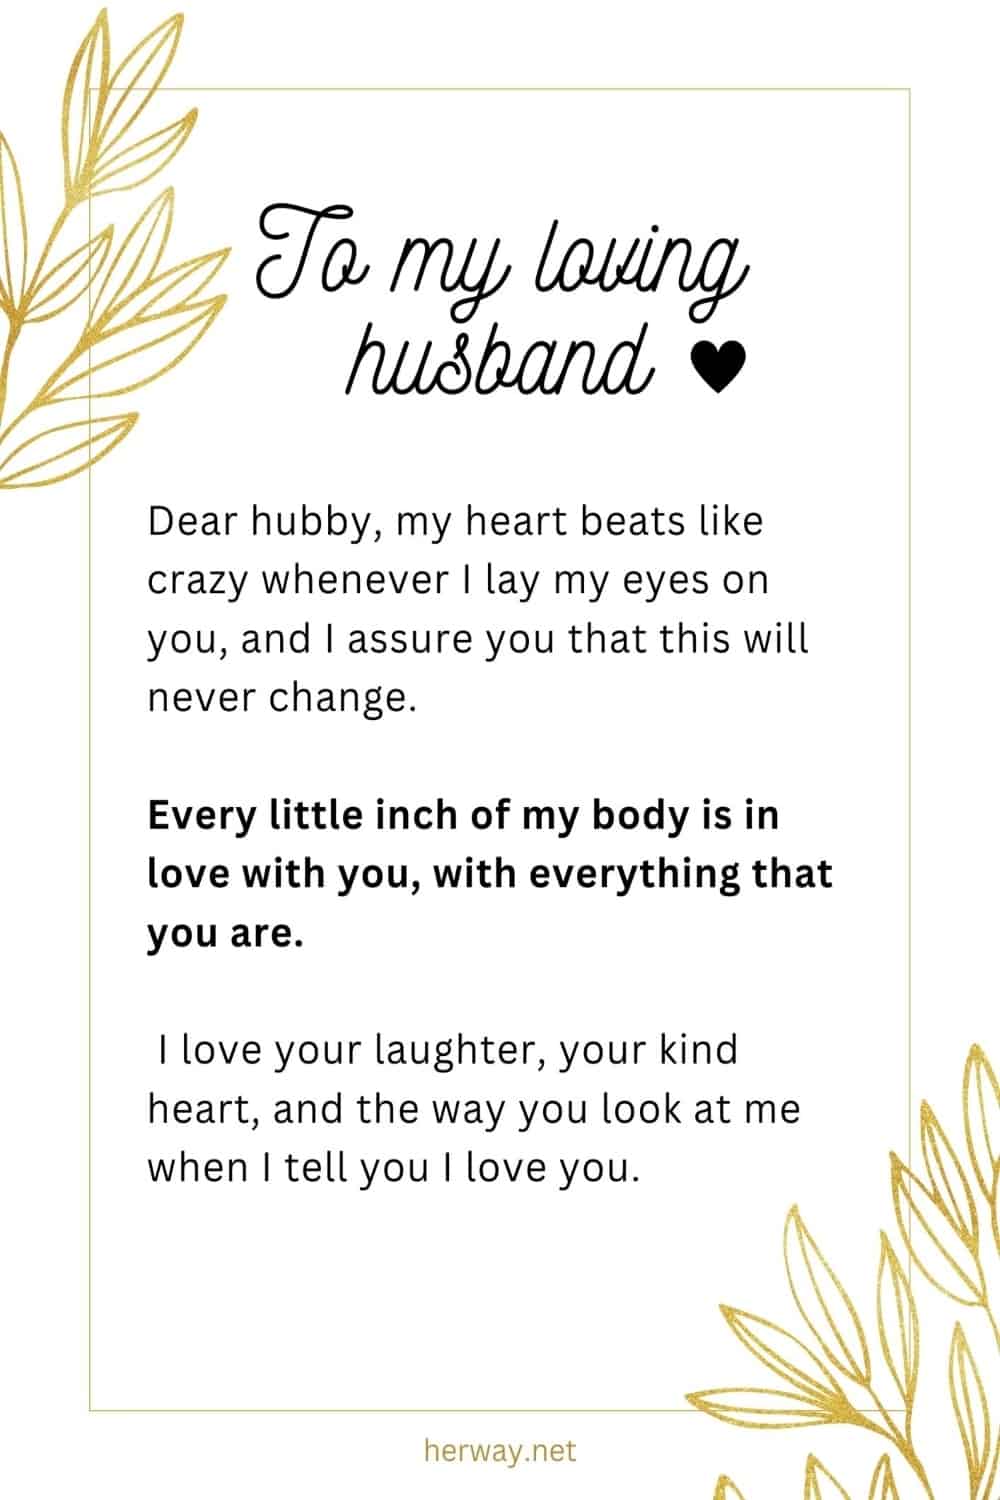 Lettera d'amore al marito che lo farà piangere